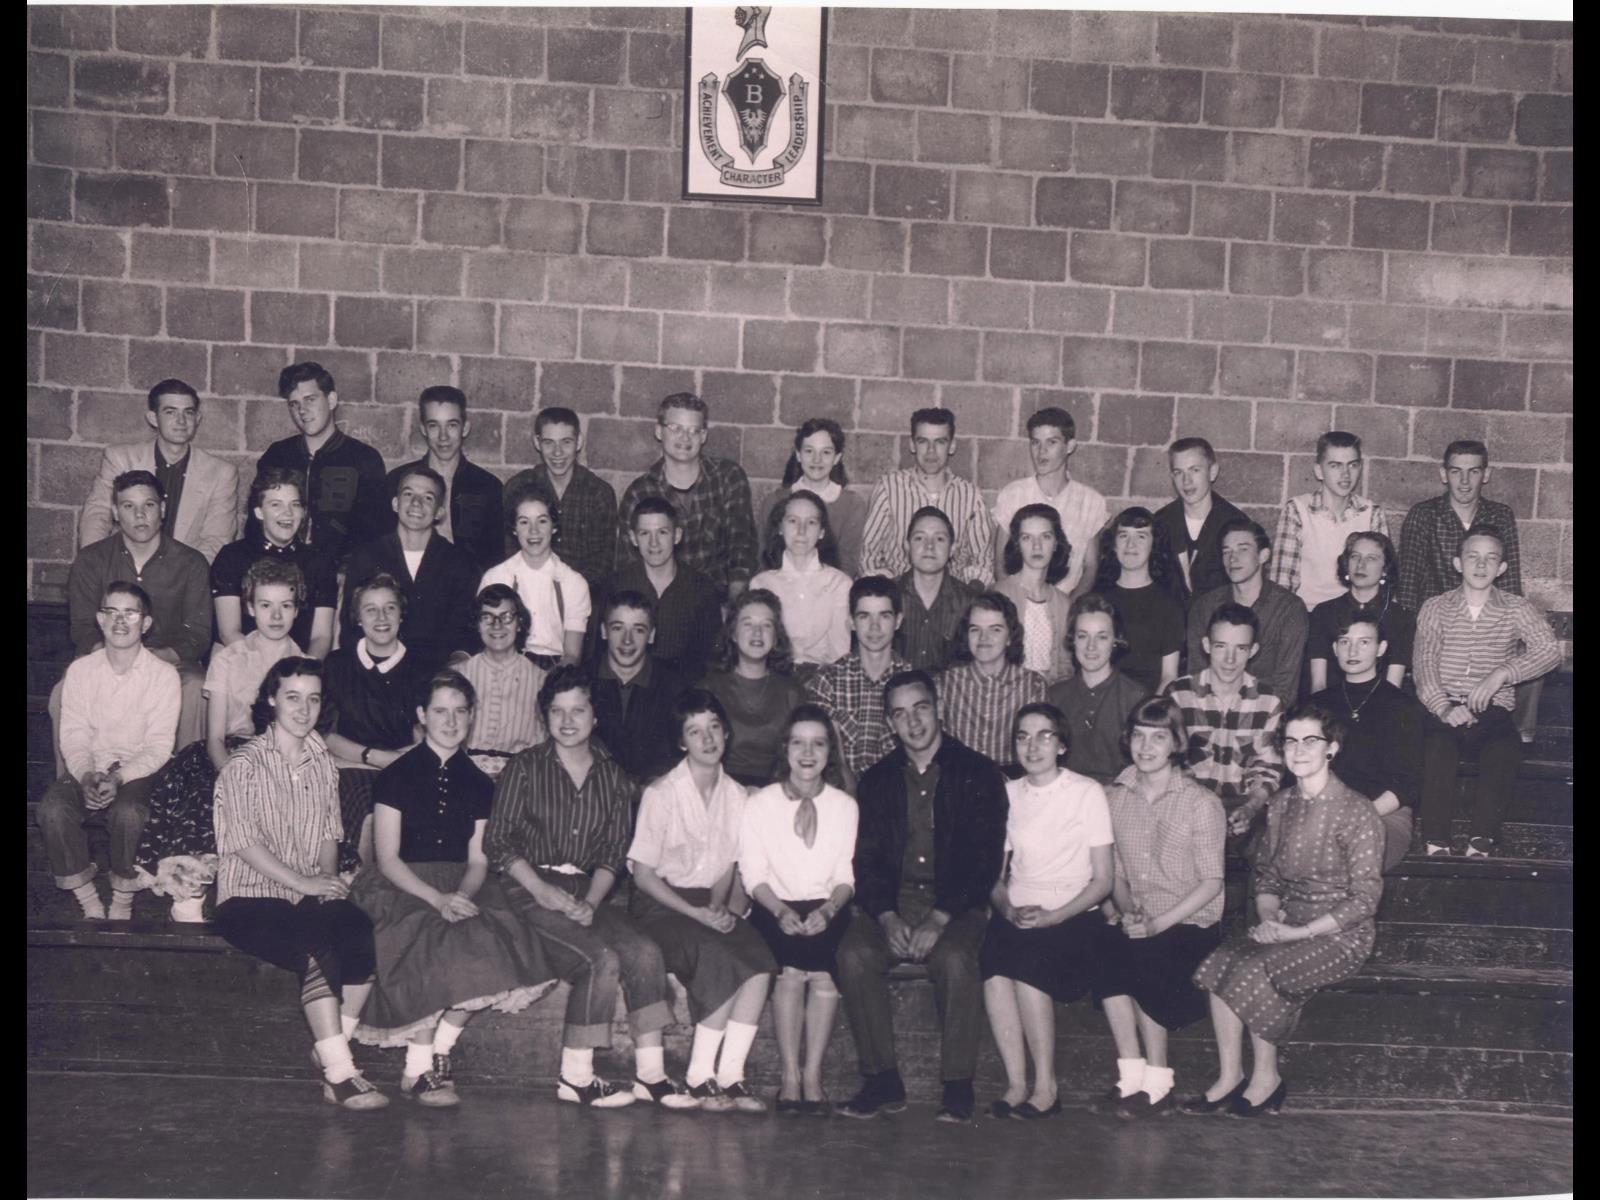 Black Star School - 1957 10th Grade.jpg